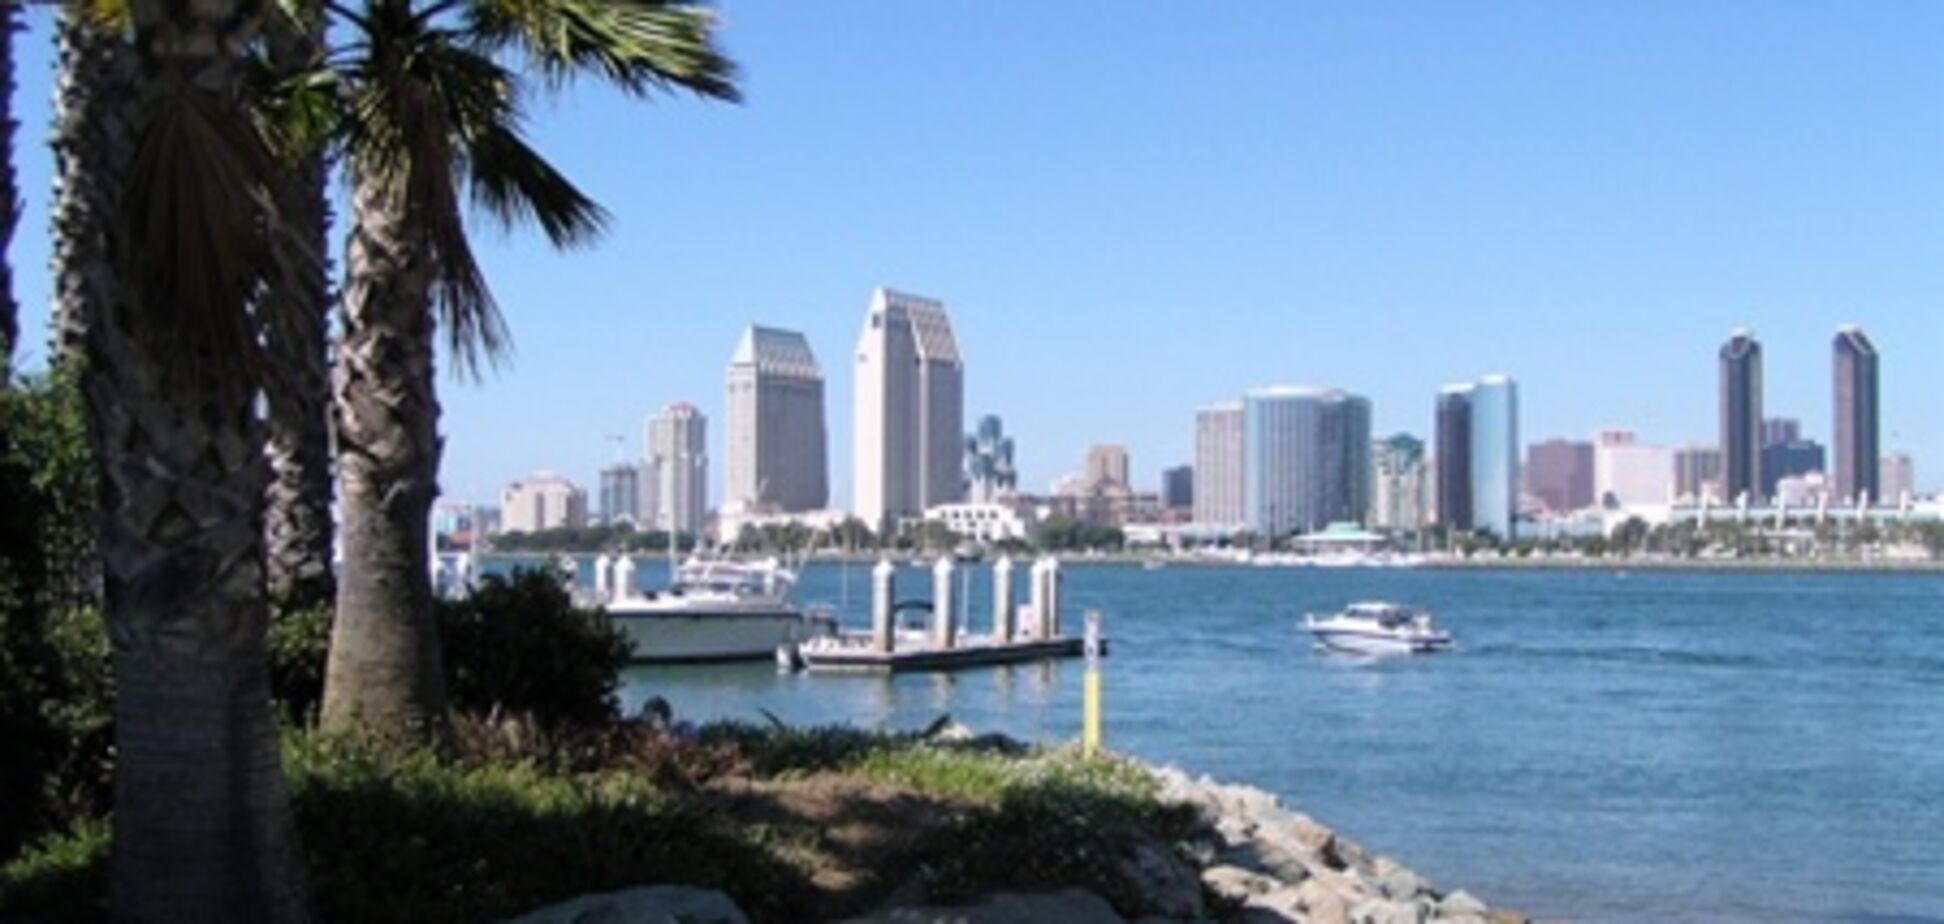 Сан-Дієго очолив рейтинг найбільш везучі міст США